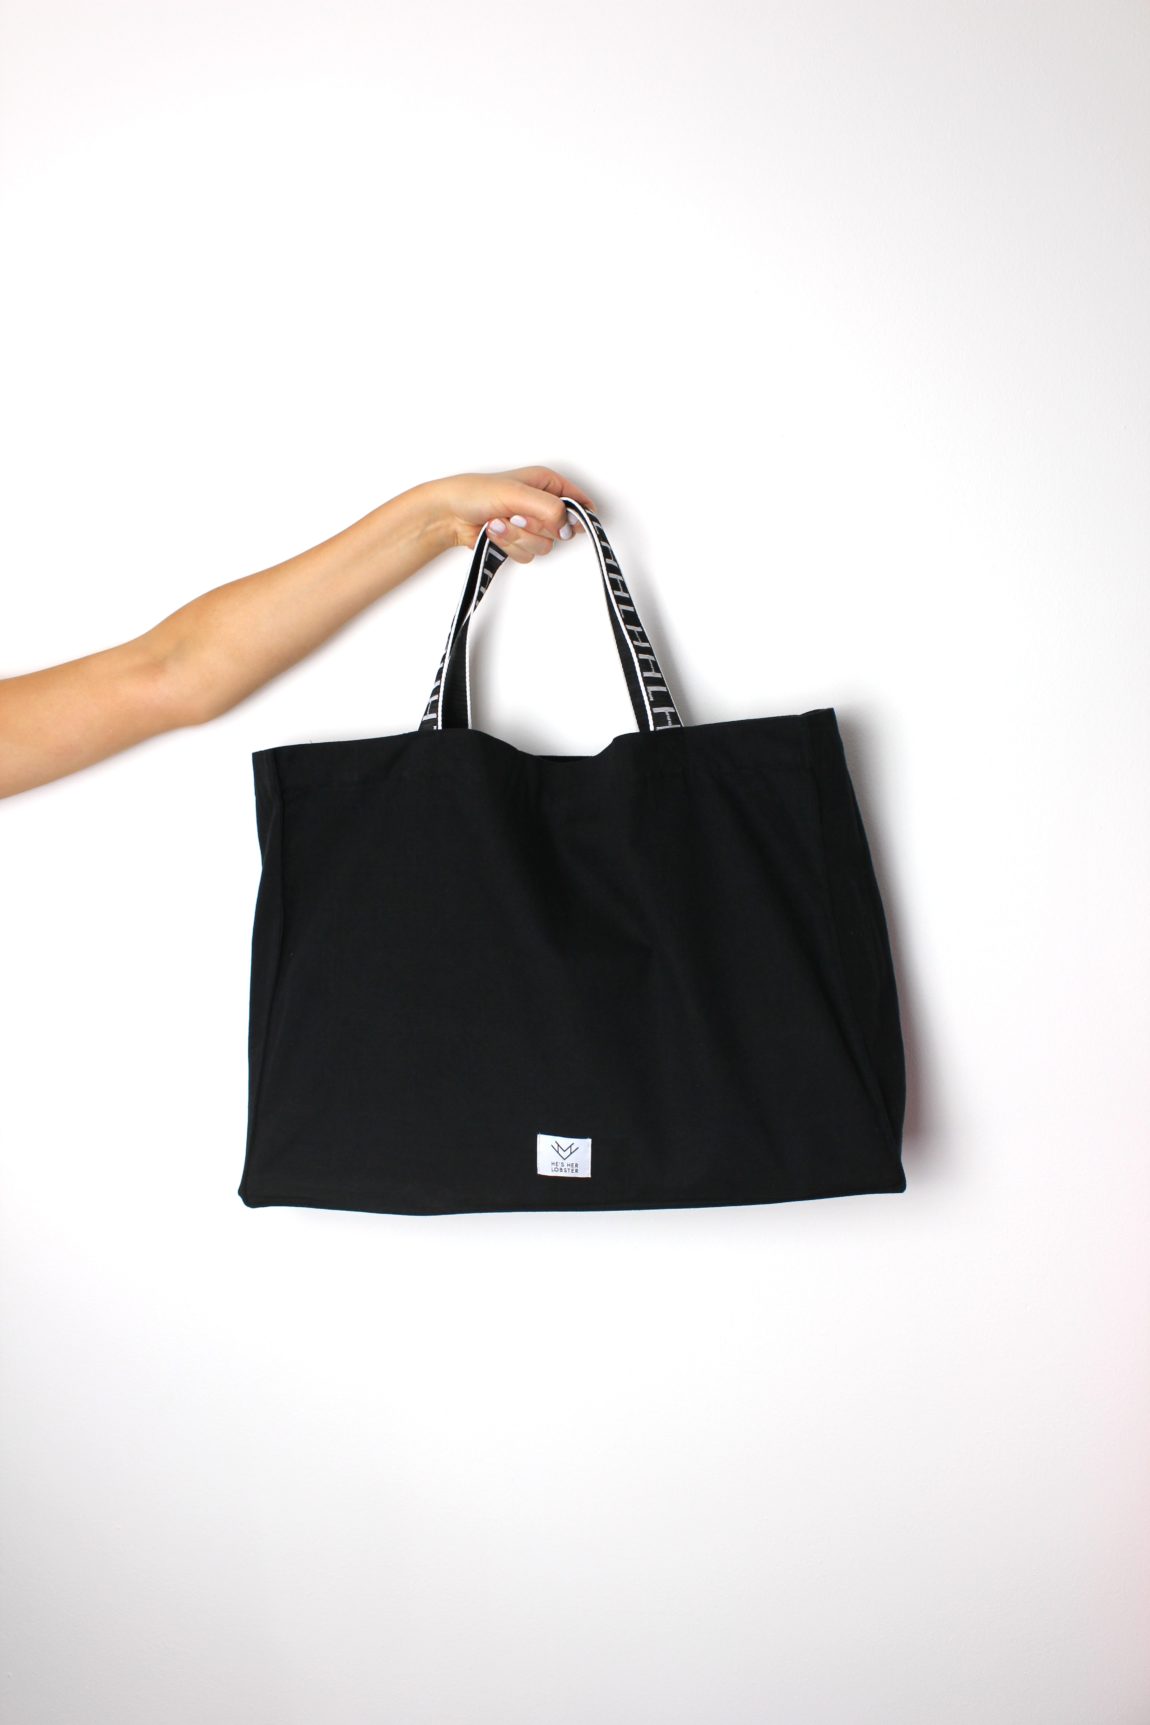 black fabric handbag